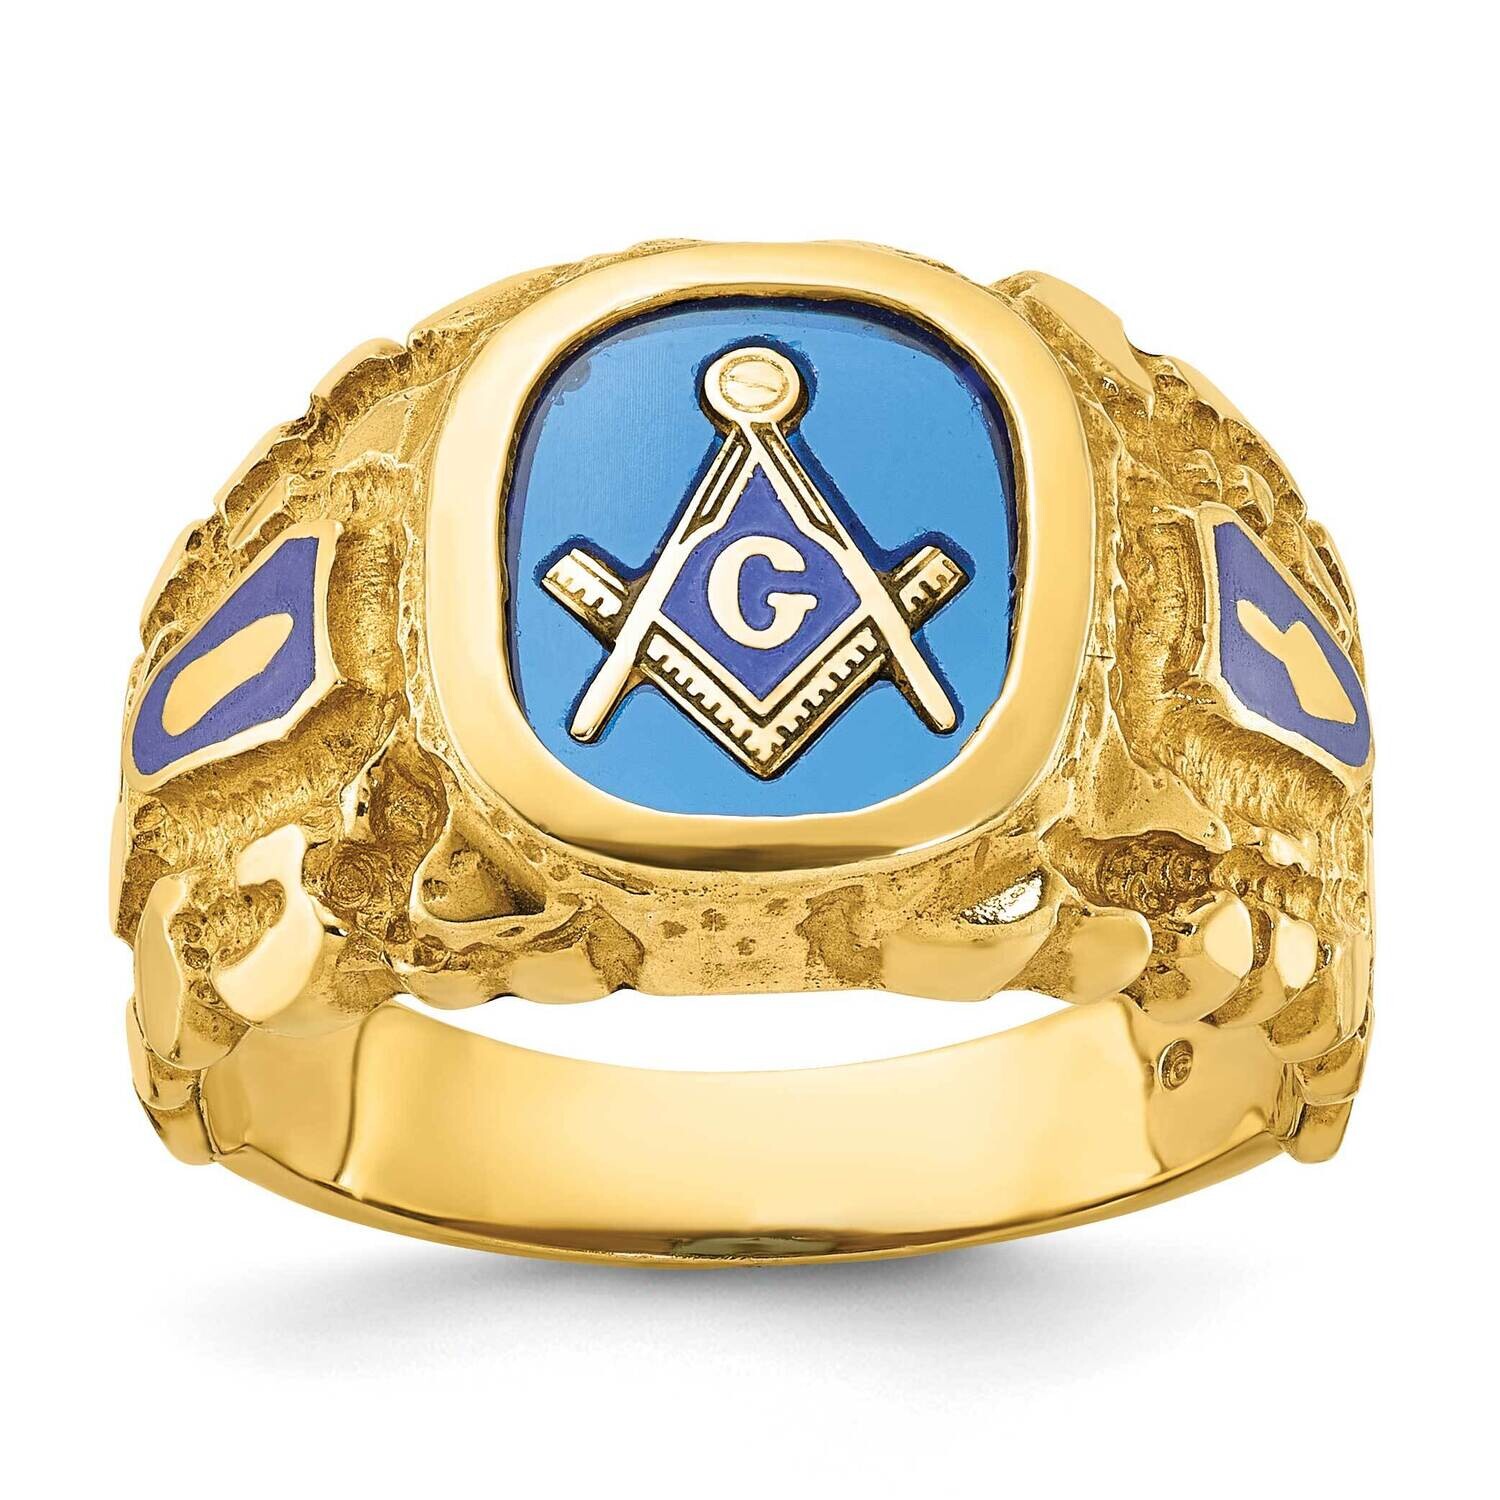 Ibgoodman Men's Polished Nugget Textured Blue Lodge Master Masonic Ring Mounting 10k Gold B57619-0Y